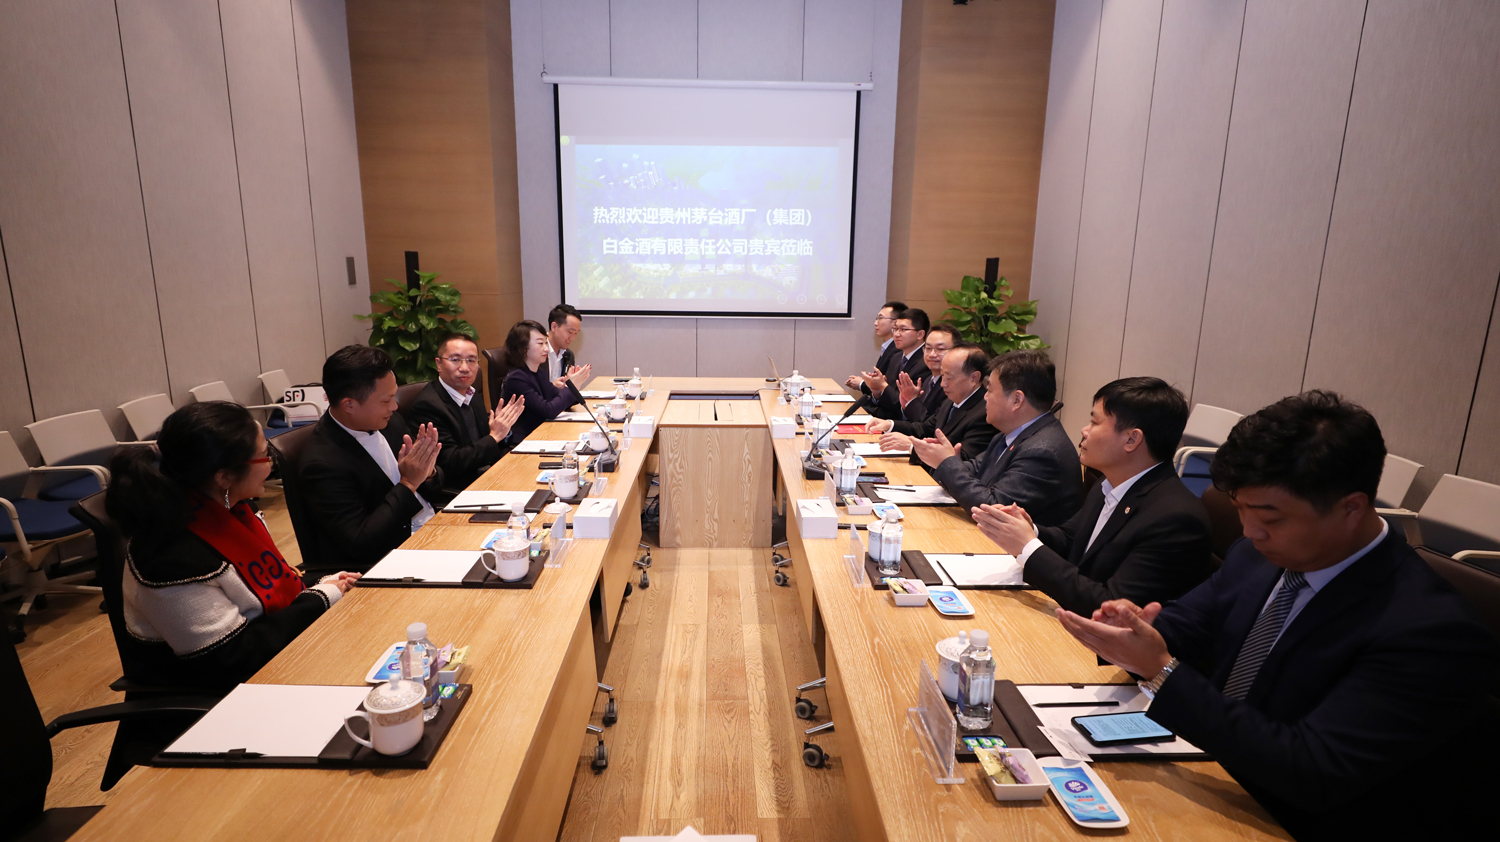 跨界整合 共謀發展丨白金酒公司參訪深圳天安駿業投資發展集團